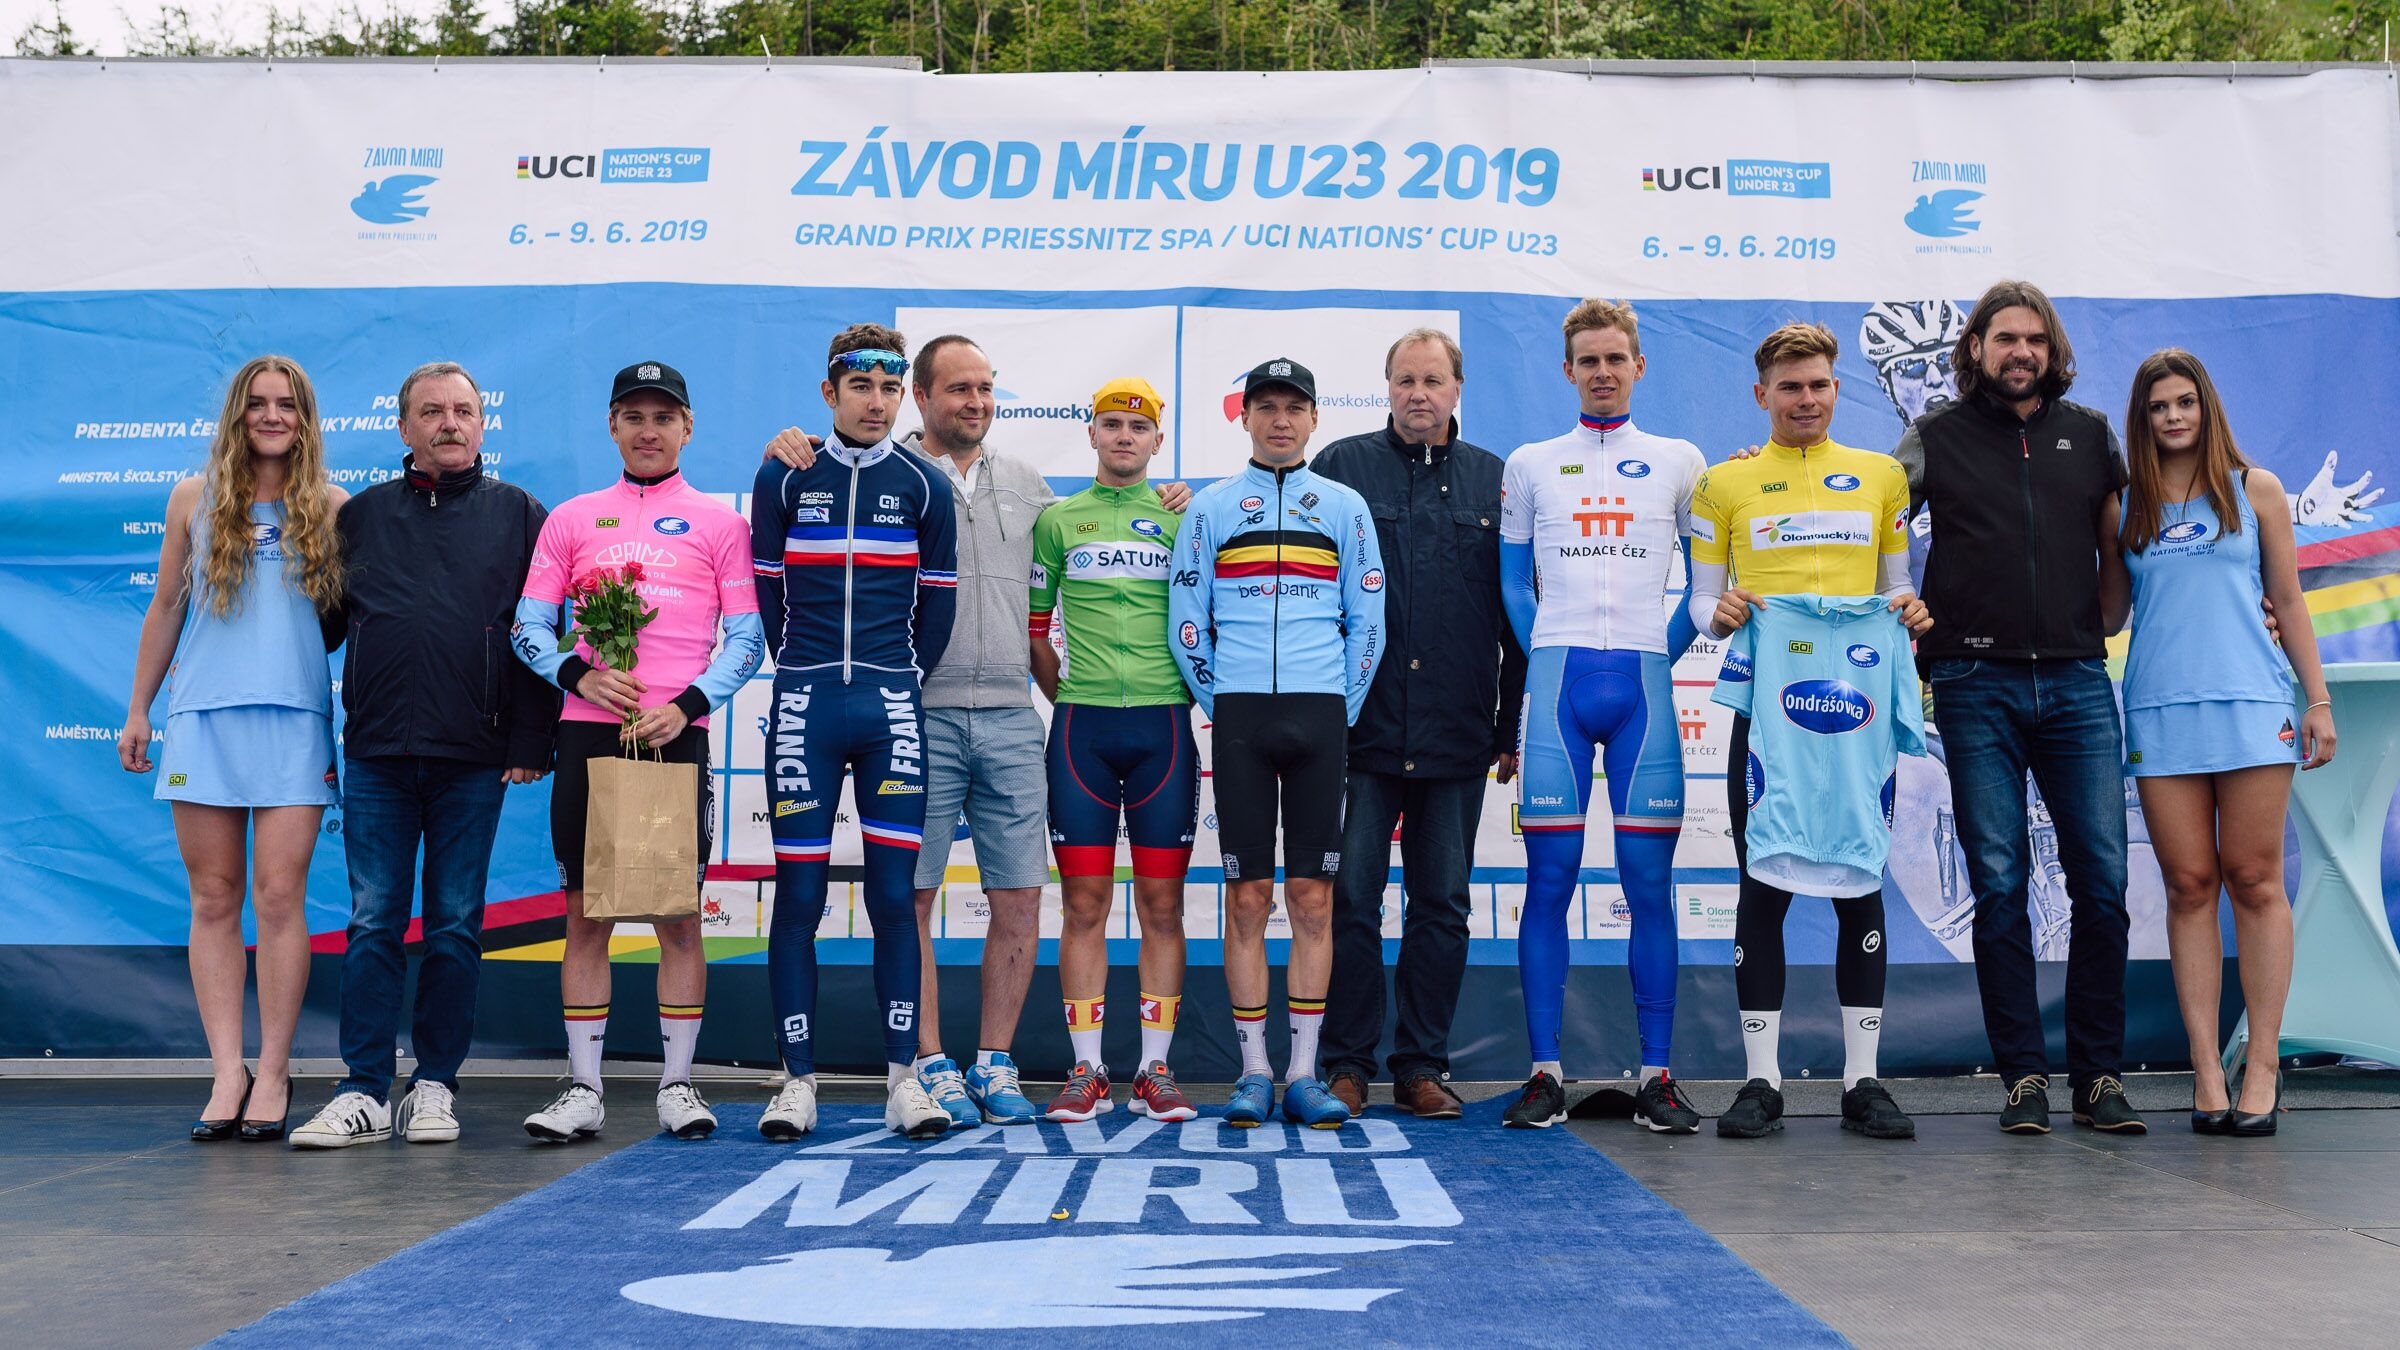 podium foto: Jan Brychta / Závod míru U23 - jesenická cyklistika